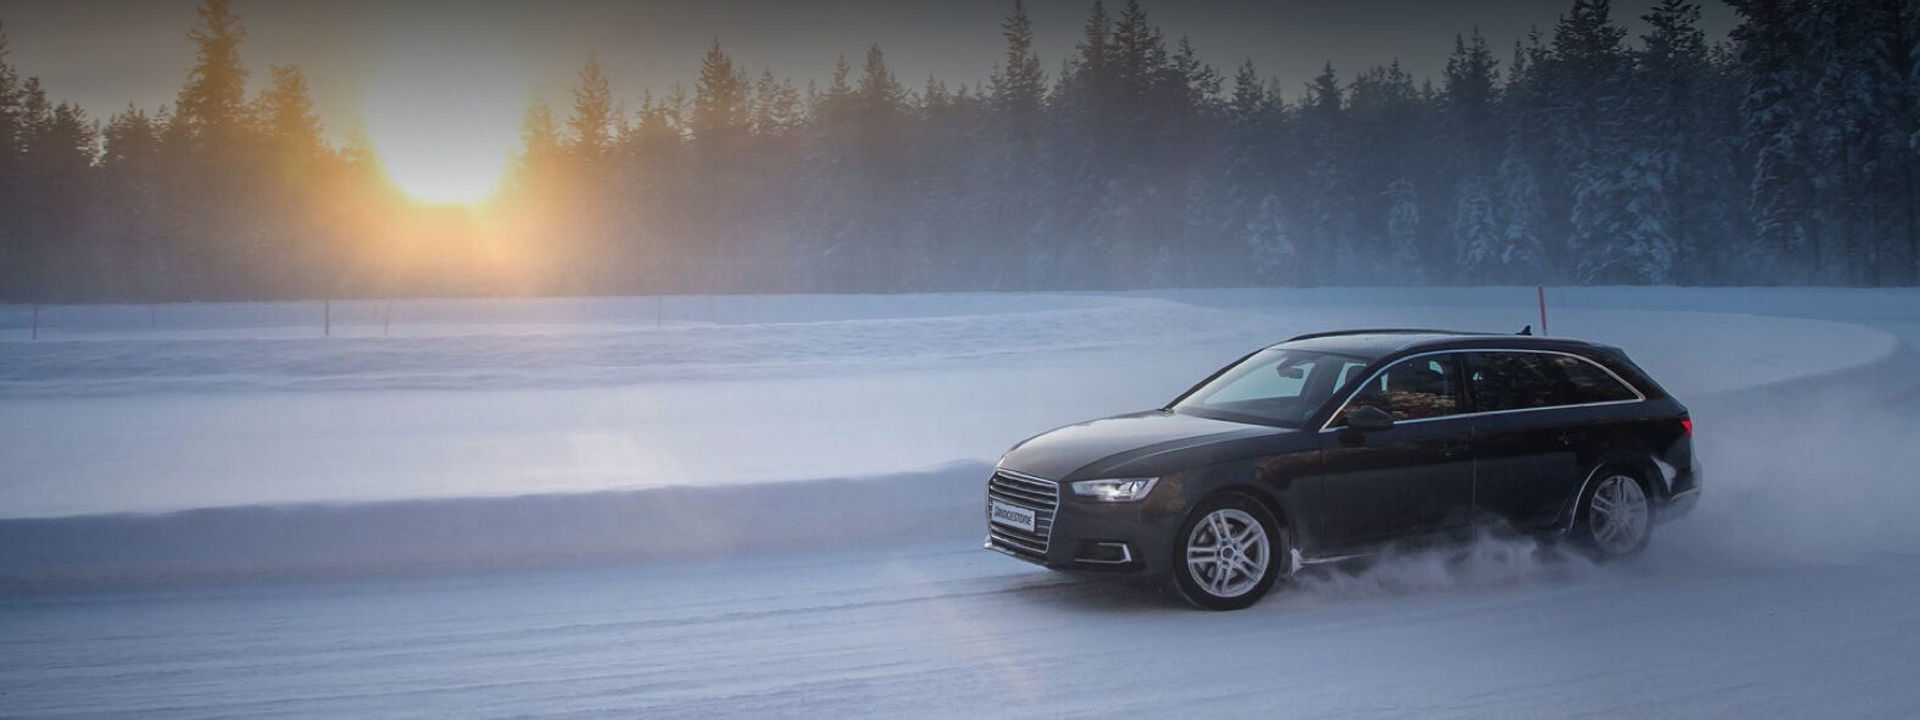 Černé Audi vybavené zimními pneumatikami Blizzak LM005 zatáčí kolem sněhové závěje na zasněžené silnici uprostřed lesa. 